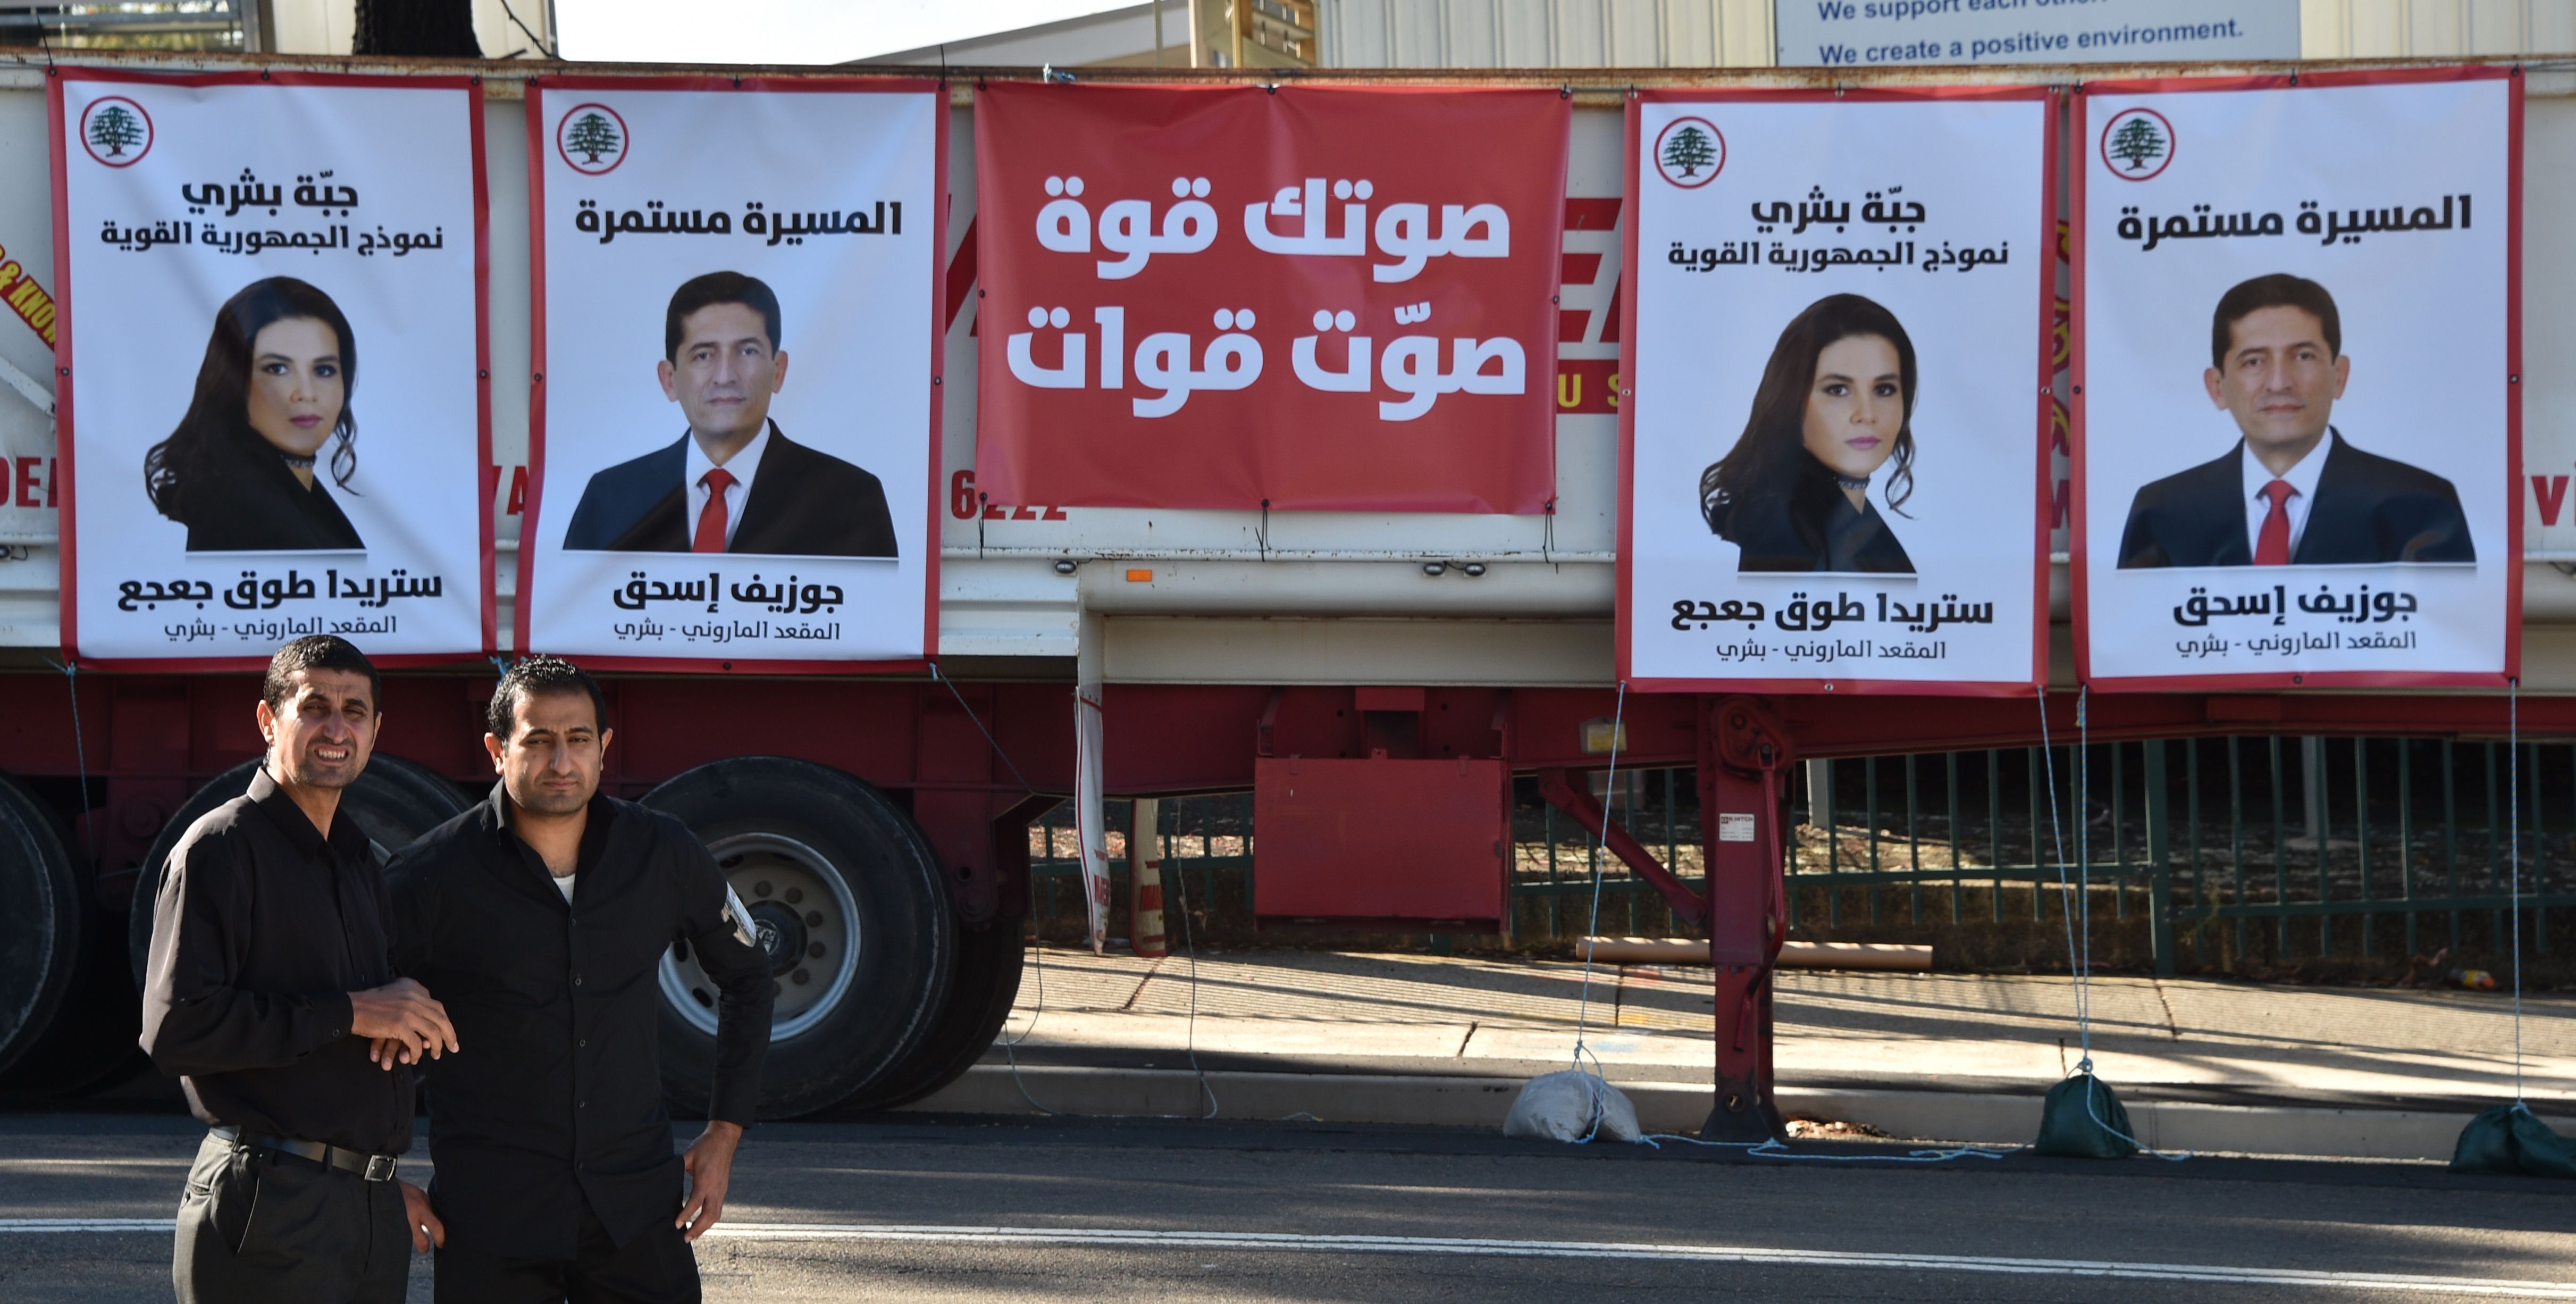 صصور المرشحين للانتخابات اللبنانية فى استراليا